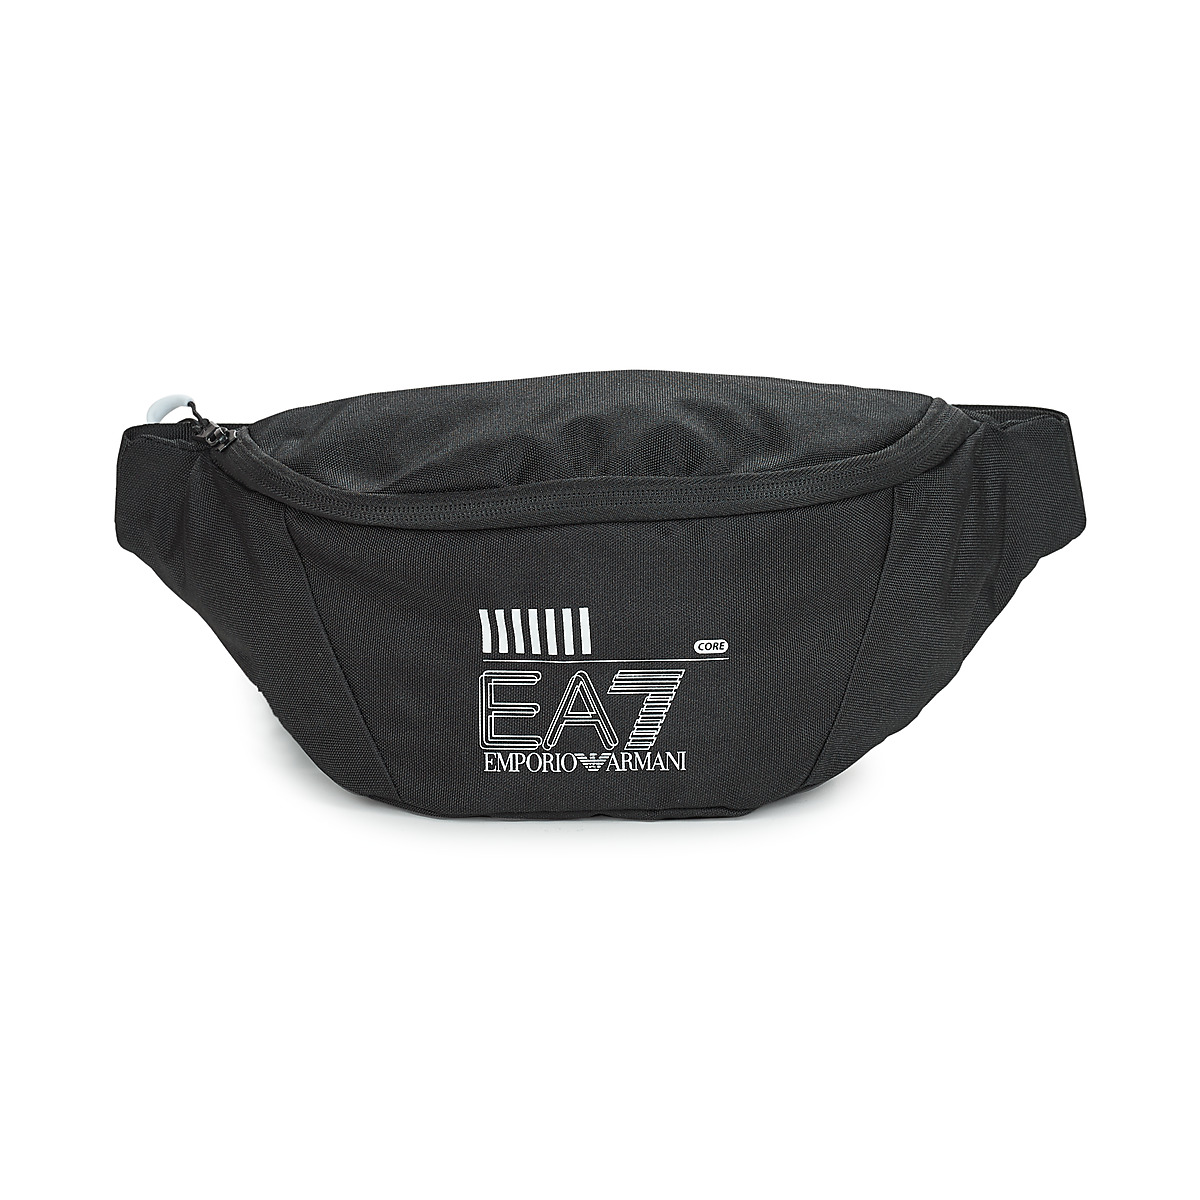 包 腰包 EA7 EMPORIO ARMANI TRAIN CORE U SLING BAG - UNISEX SLING BAG 黑色 / 白色